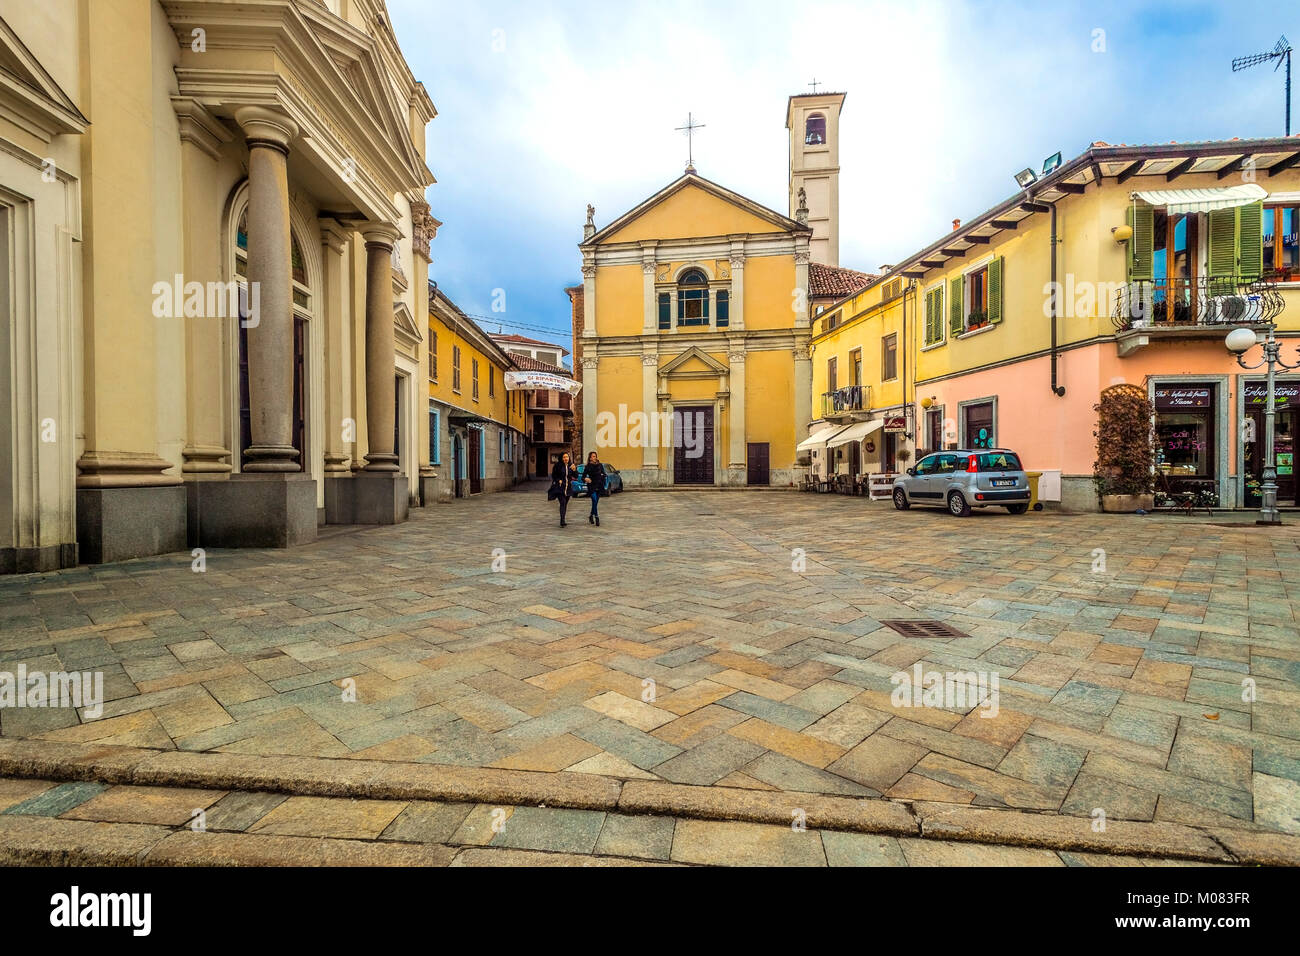 Italia Piemonte Settimo Torinese - Centro storico - Piazza San Pietro in Vincoli - Chiesa di Santa Croce Foto Stock